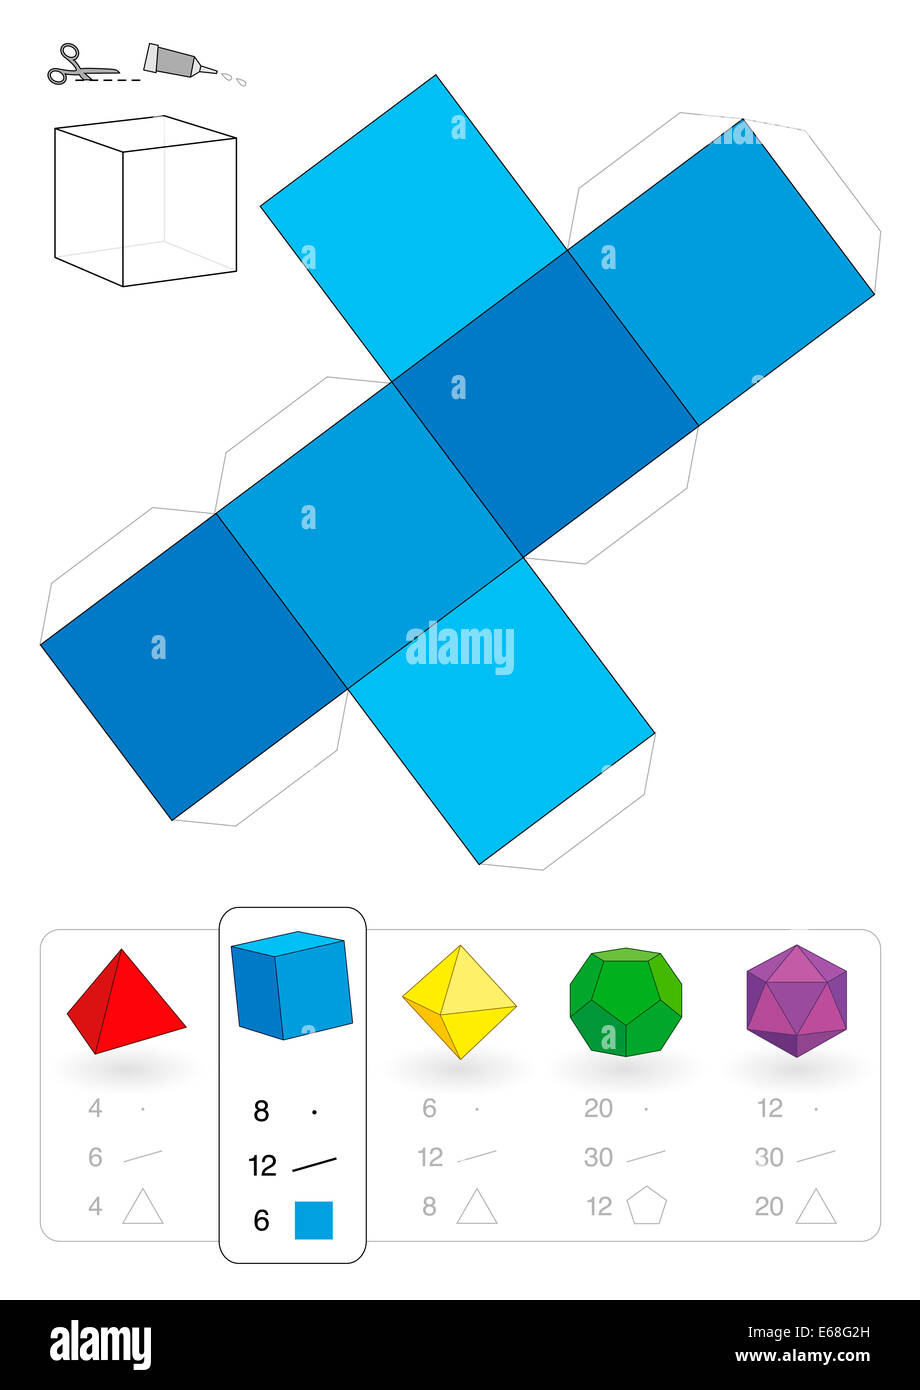 Modello di carta di un cubo o hexahedron, uno dei cinque solidi platonici, per rendere tridimensionale il lavoro artigianale fuori dei quadrati Foto Stock